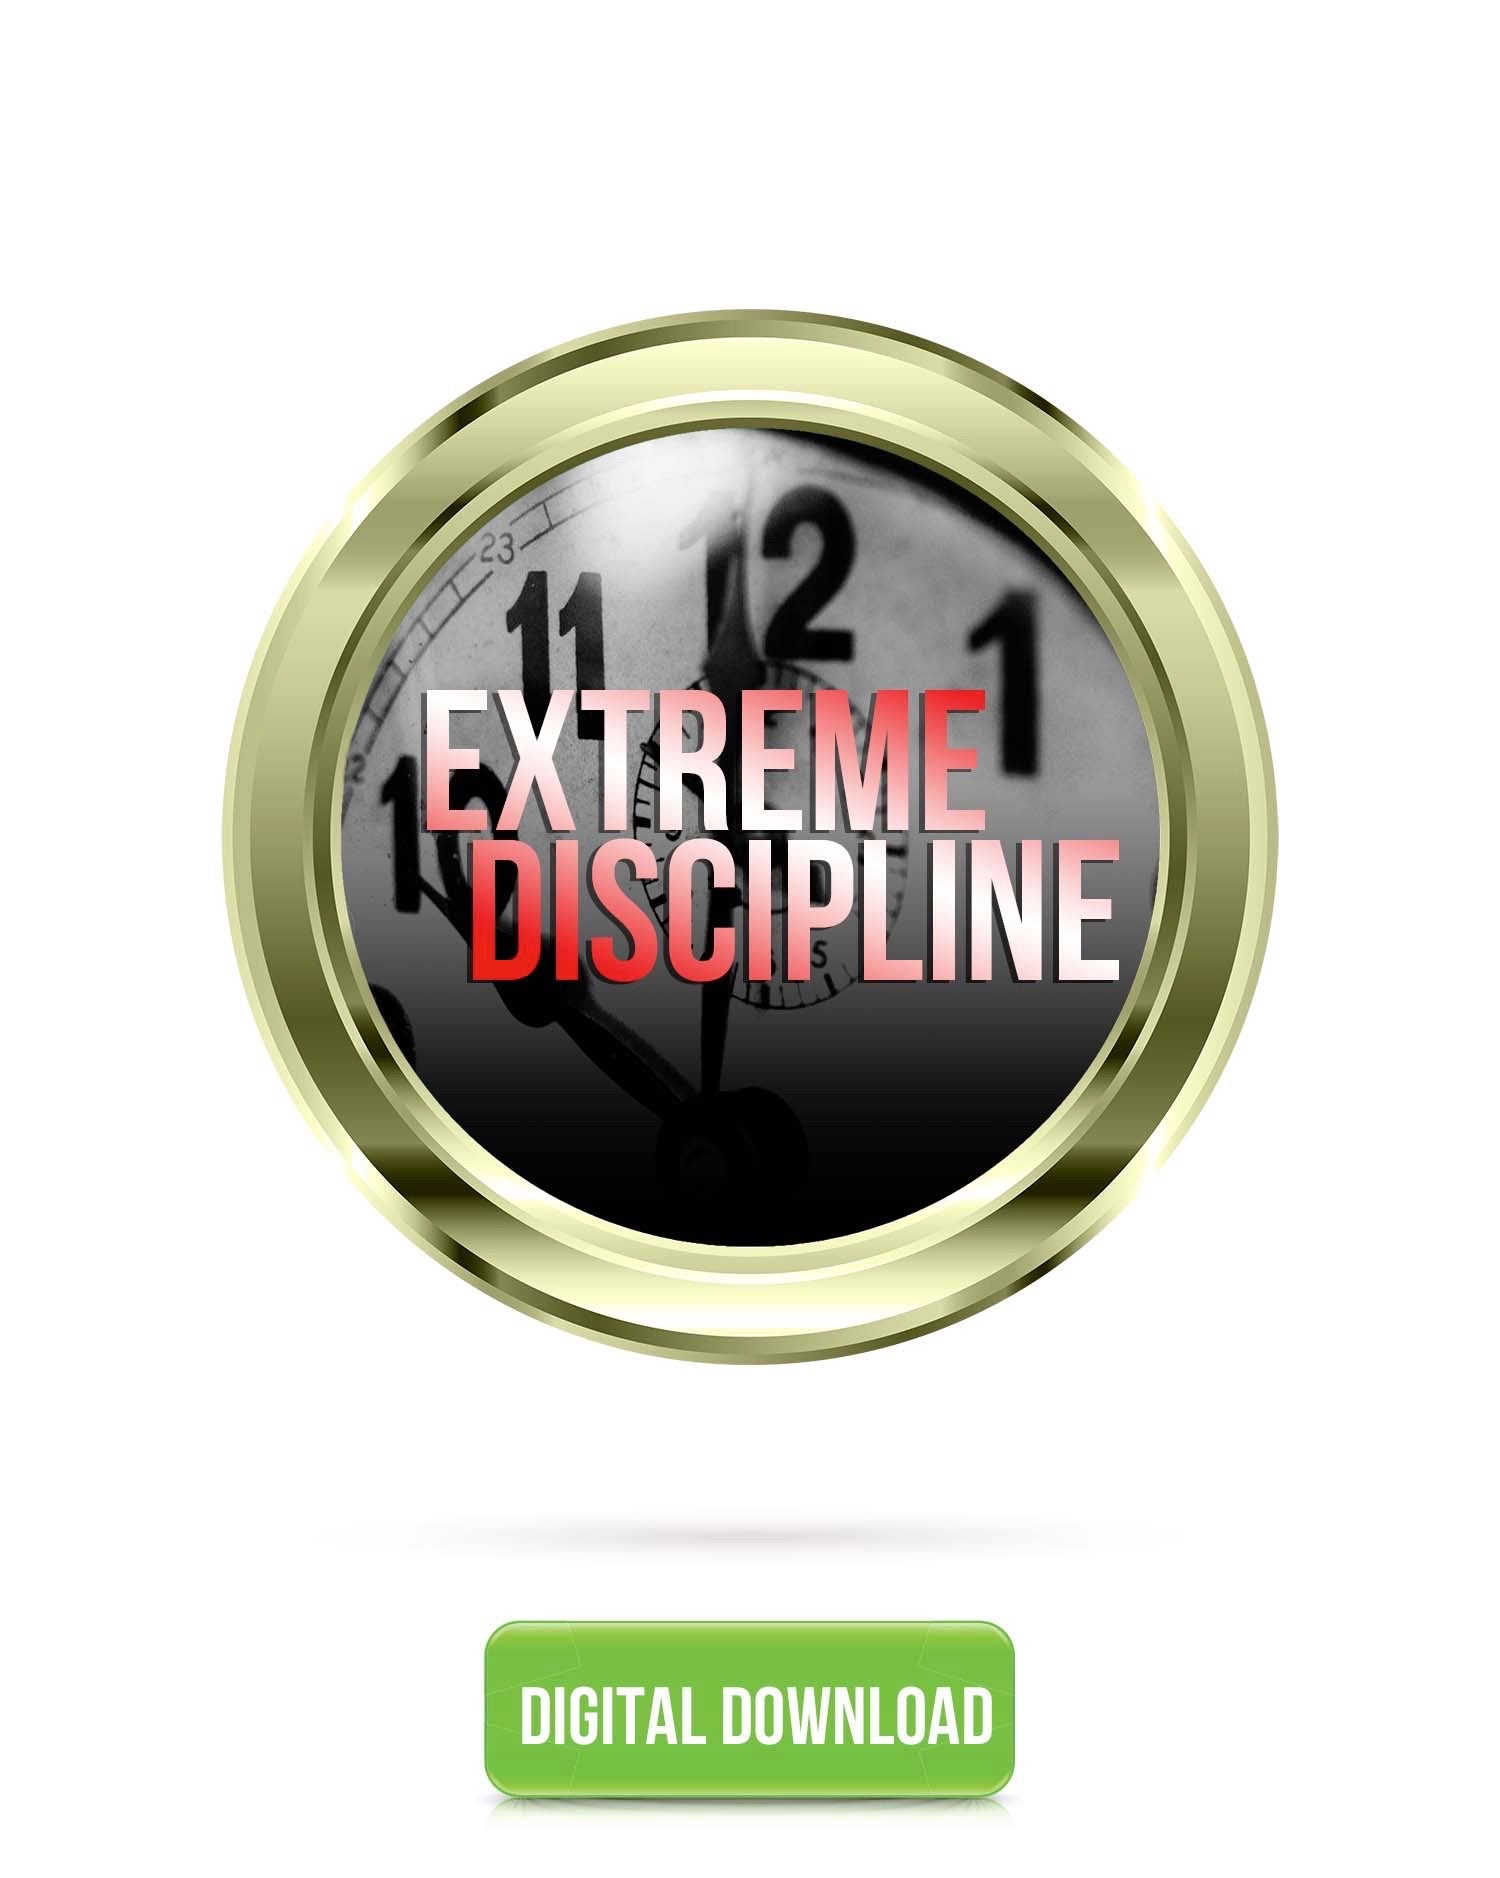 Extreme Discipline V4.0 | Delay Gratification & Accomplish Your Goals